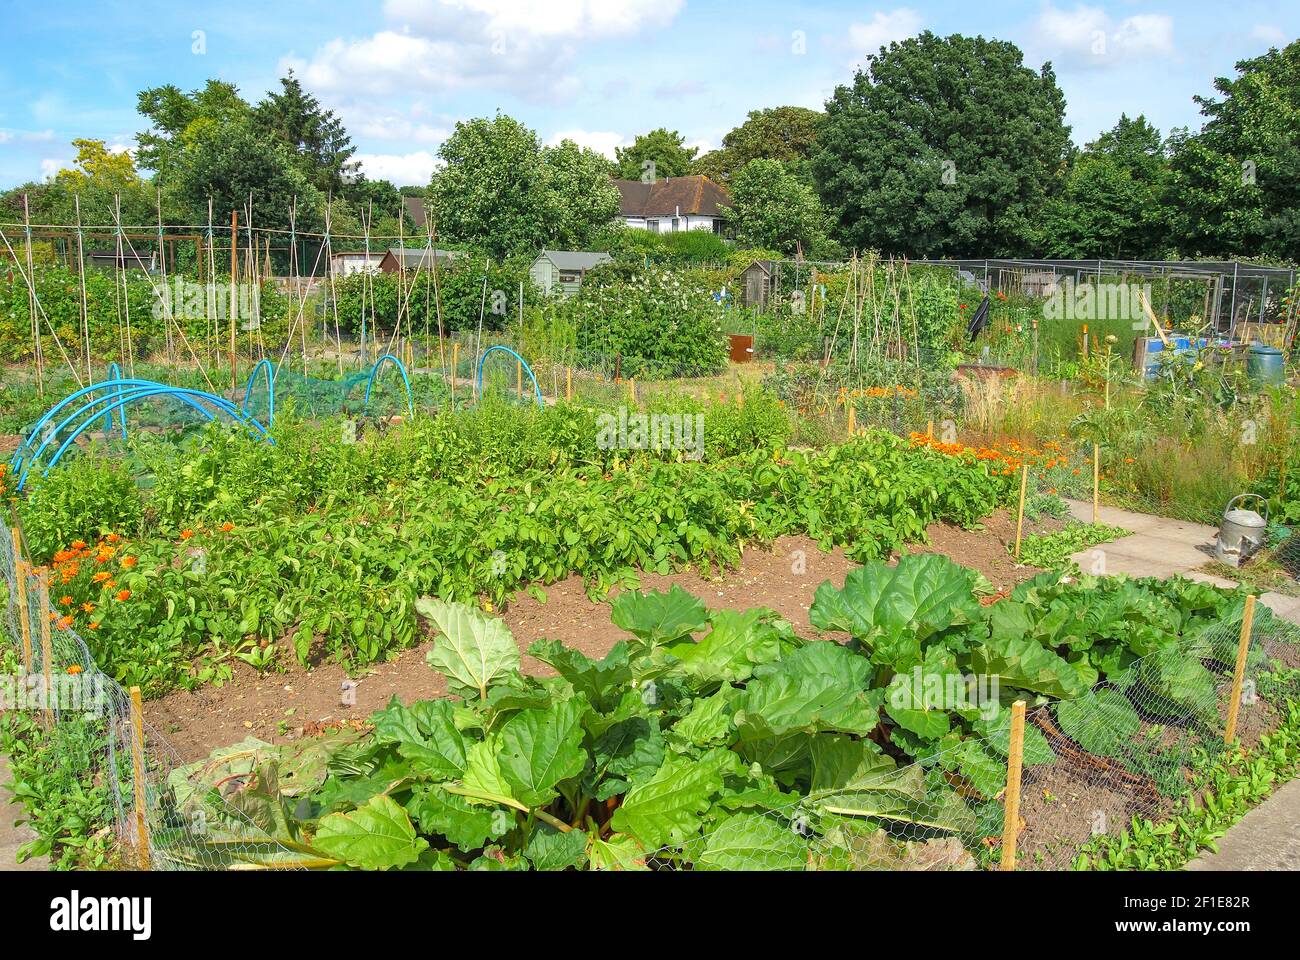 Parcelle de jardin allotissement, Hampshire, Angleterre, Royaume-Uni Banque D'Images